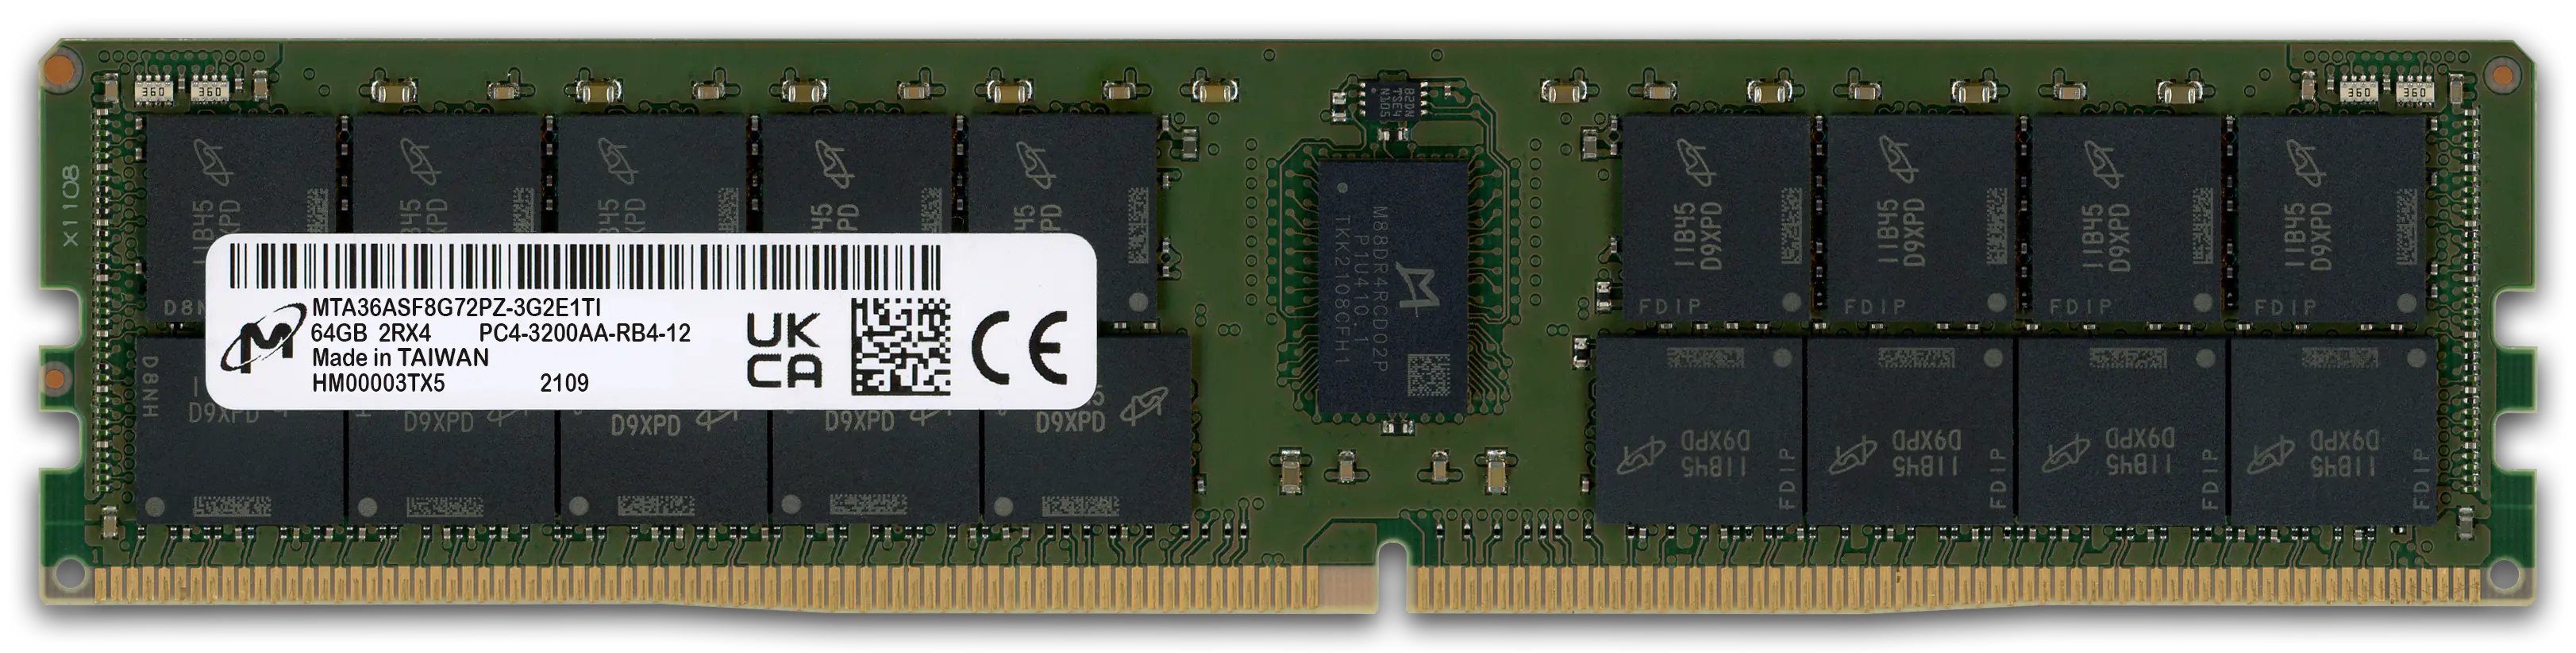 Micron 64GB RAM-Modul DDR4 3200 MT/s PC4-3200AA-R RDIMM ECC